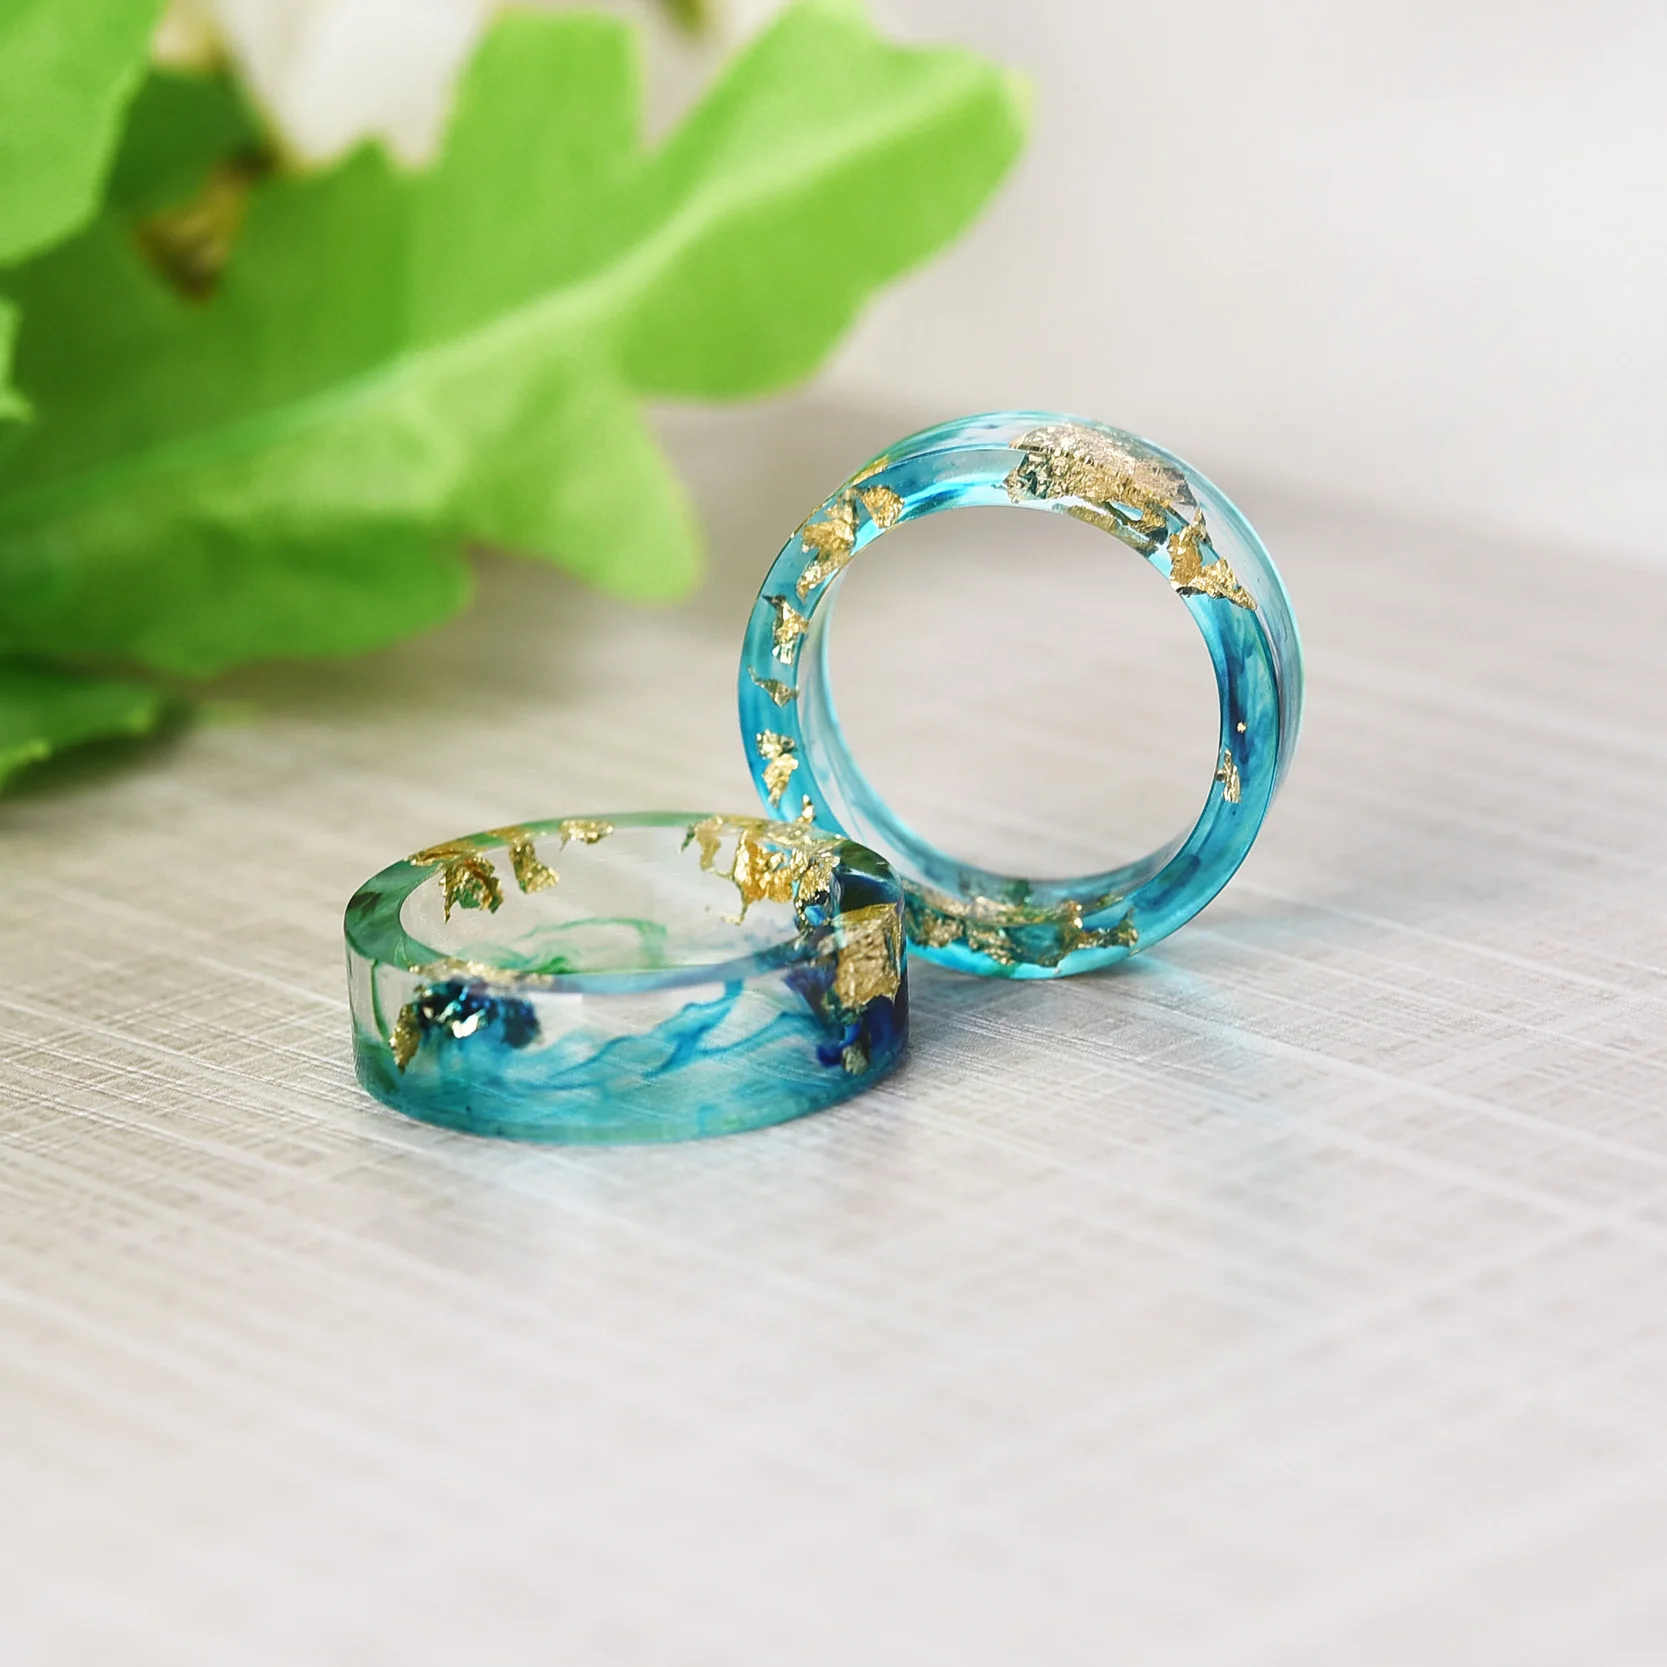 Горячее предложение, кольца ручной работы из смолы, мужские кольца с голубыми и зелеными чернилами, нарисованные пейзажи внутри, кольца для женщин, ювелирные изделия для свадебной вечеринки